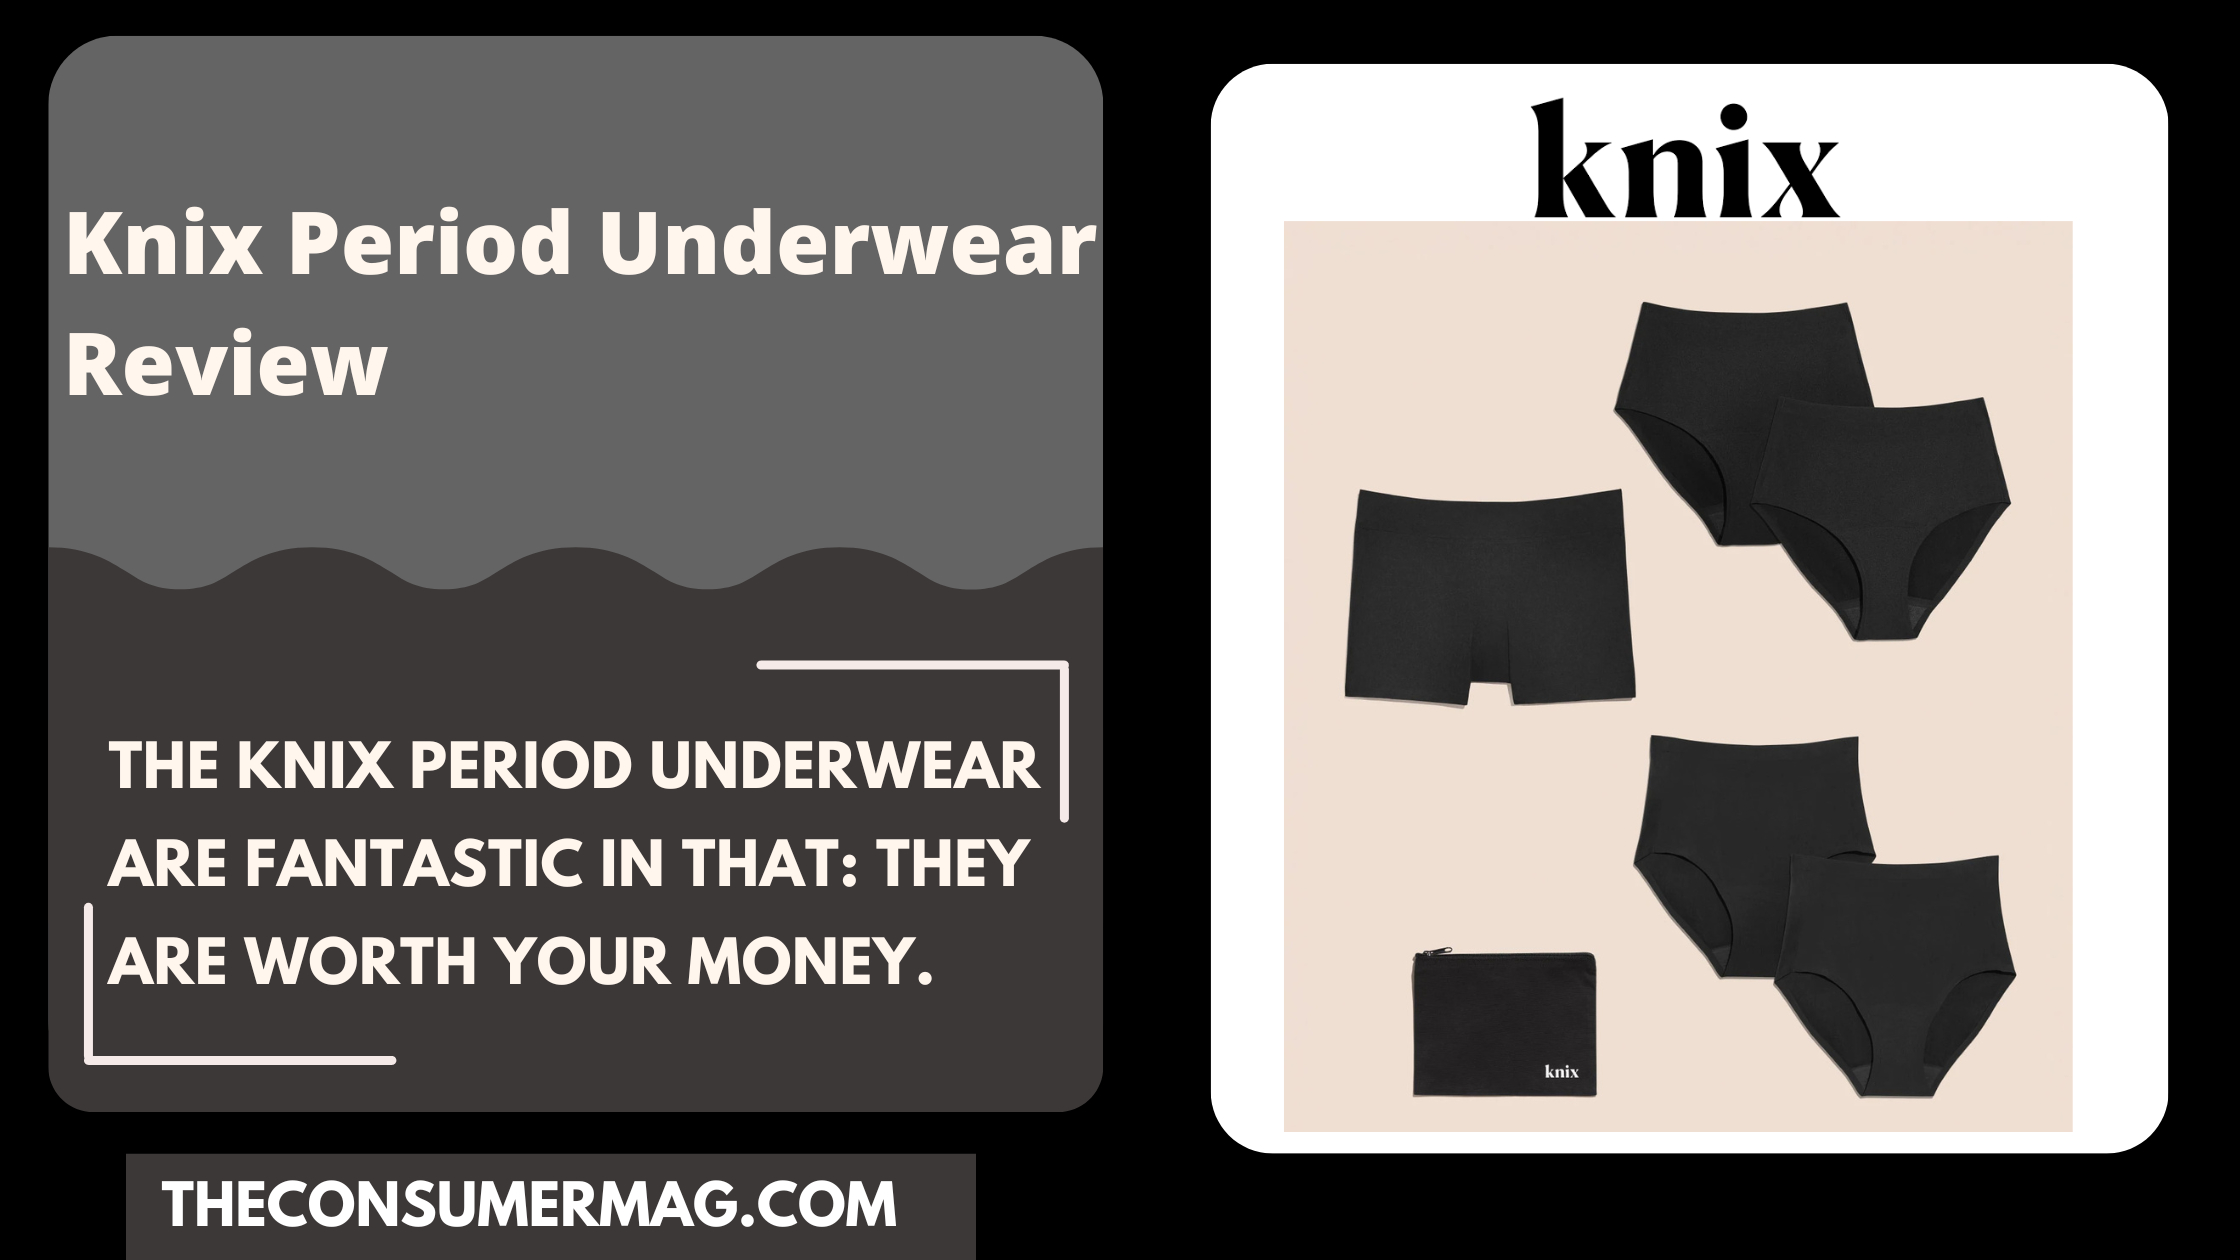 Knix Period Underwear featured image